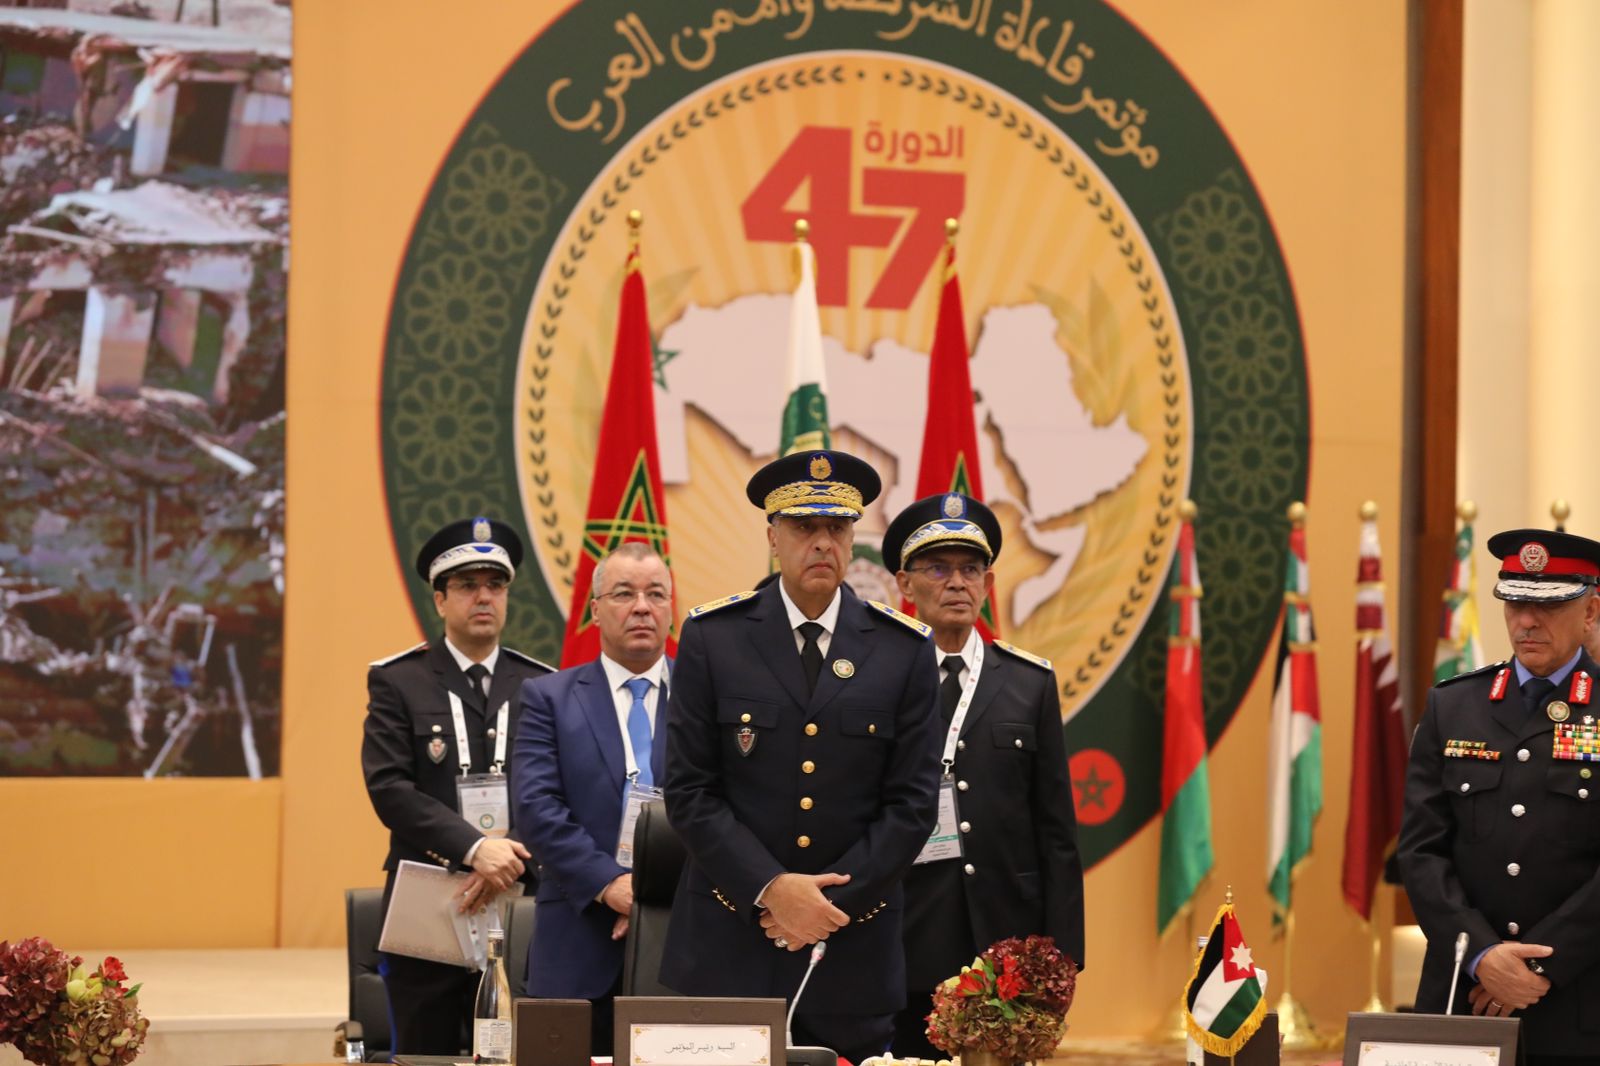 طنجة.. حموشي يترأس أشغال المؤتمر 47 لقادة الشرطة والأمن العرب